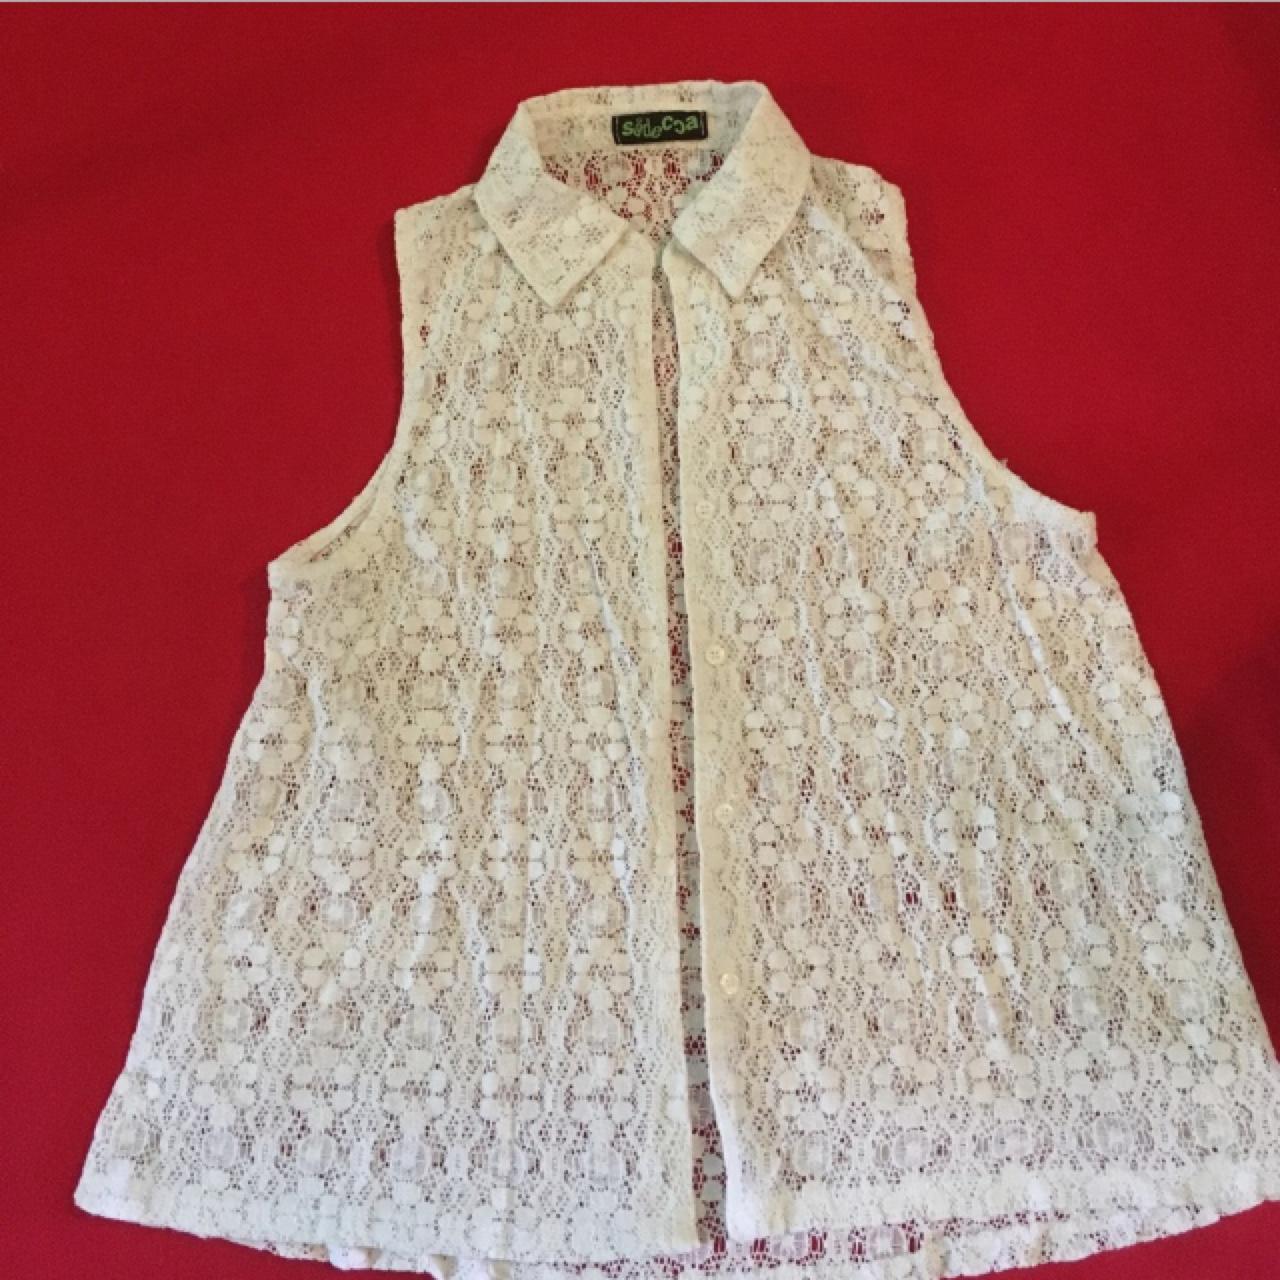 White A-Line Lace Crochet Blouse - Cute white button... - Depop